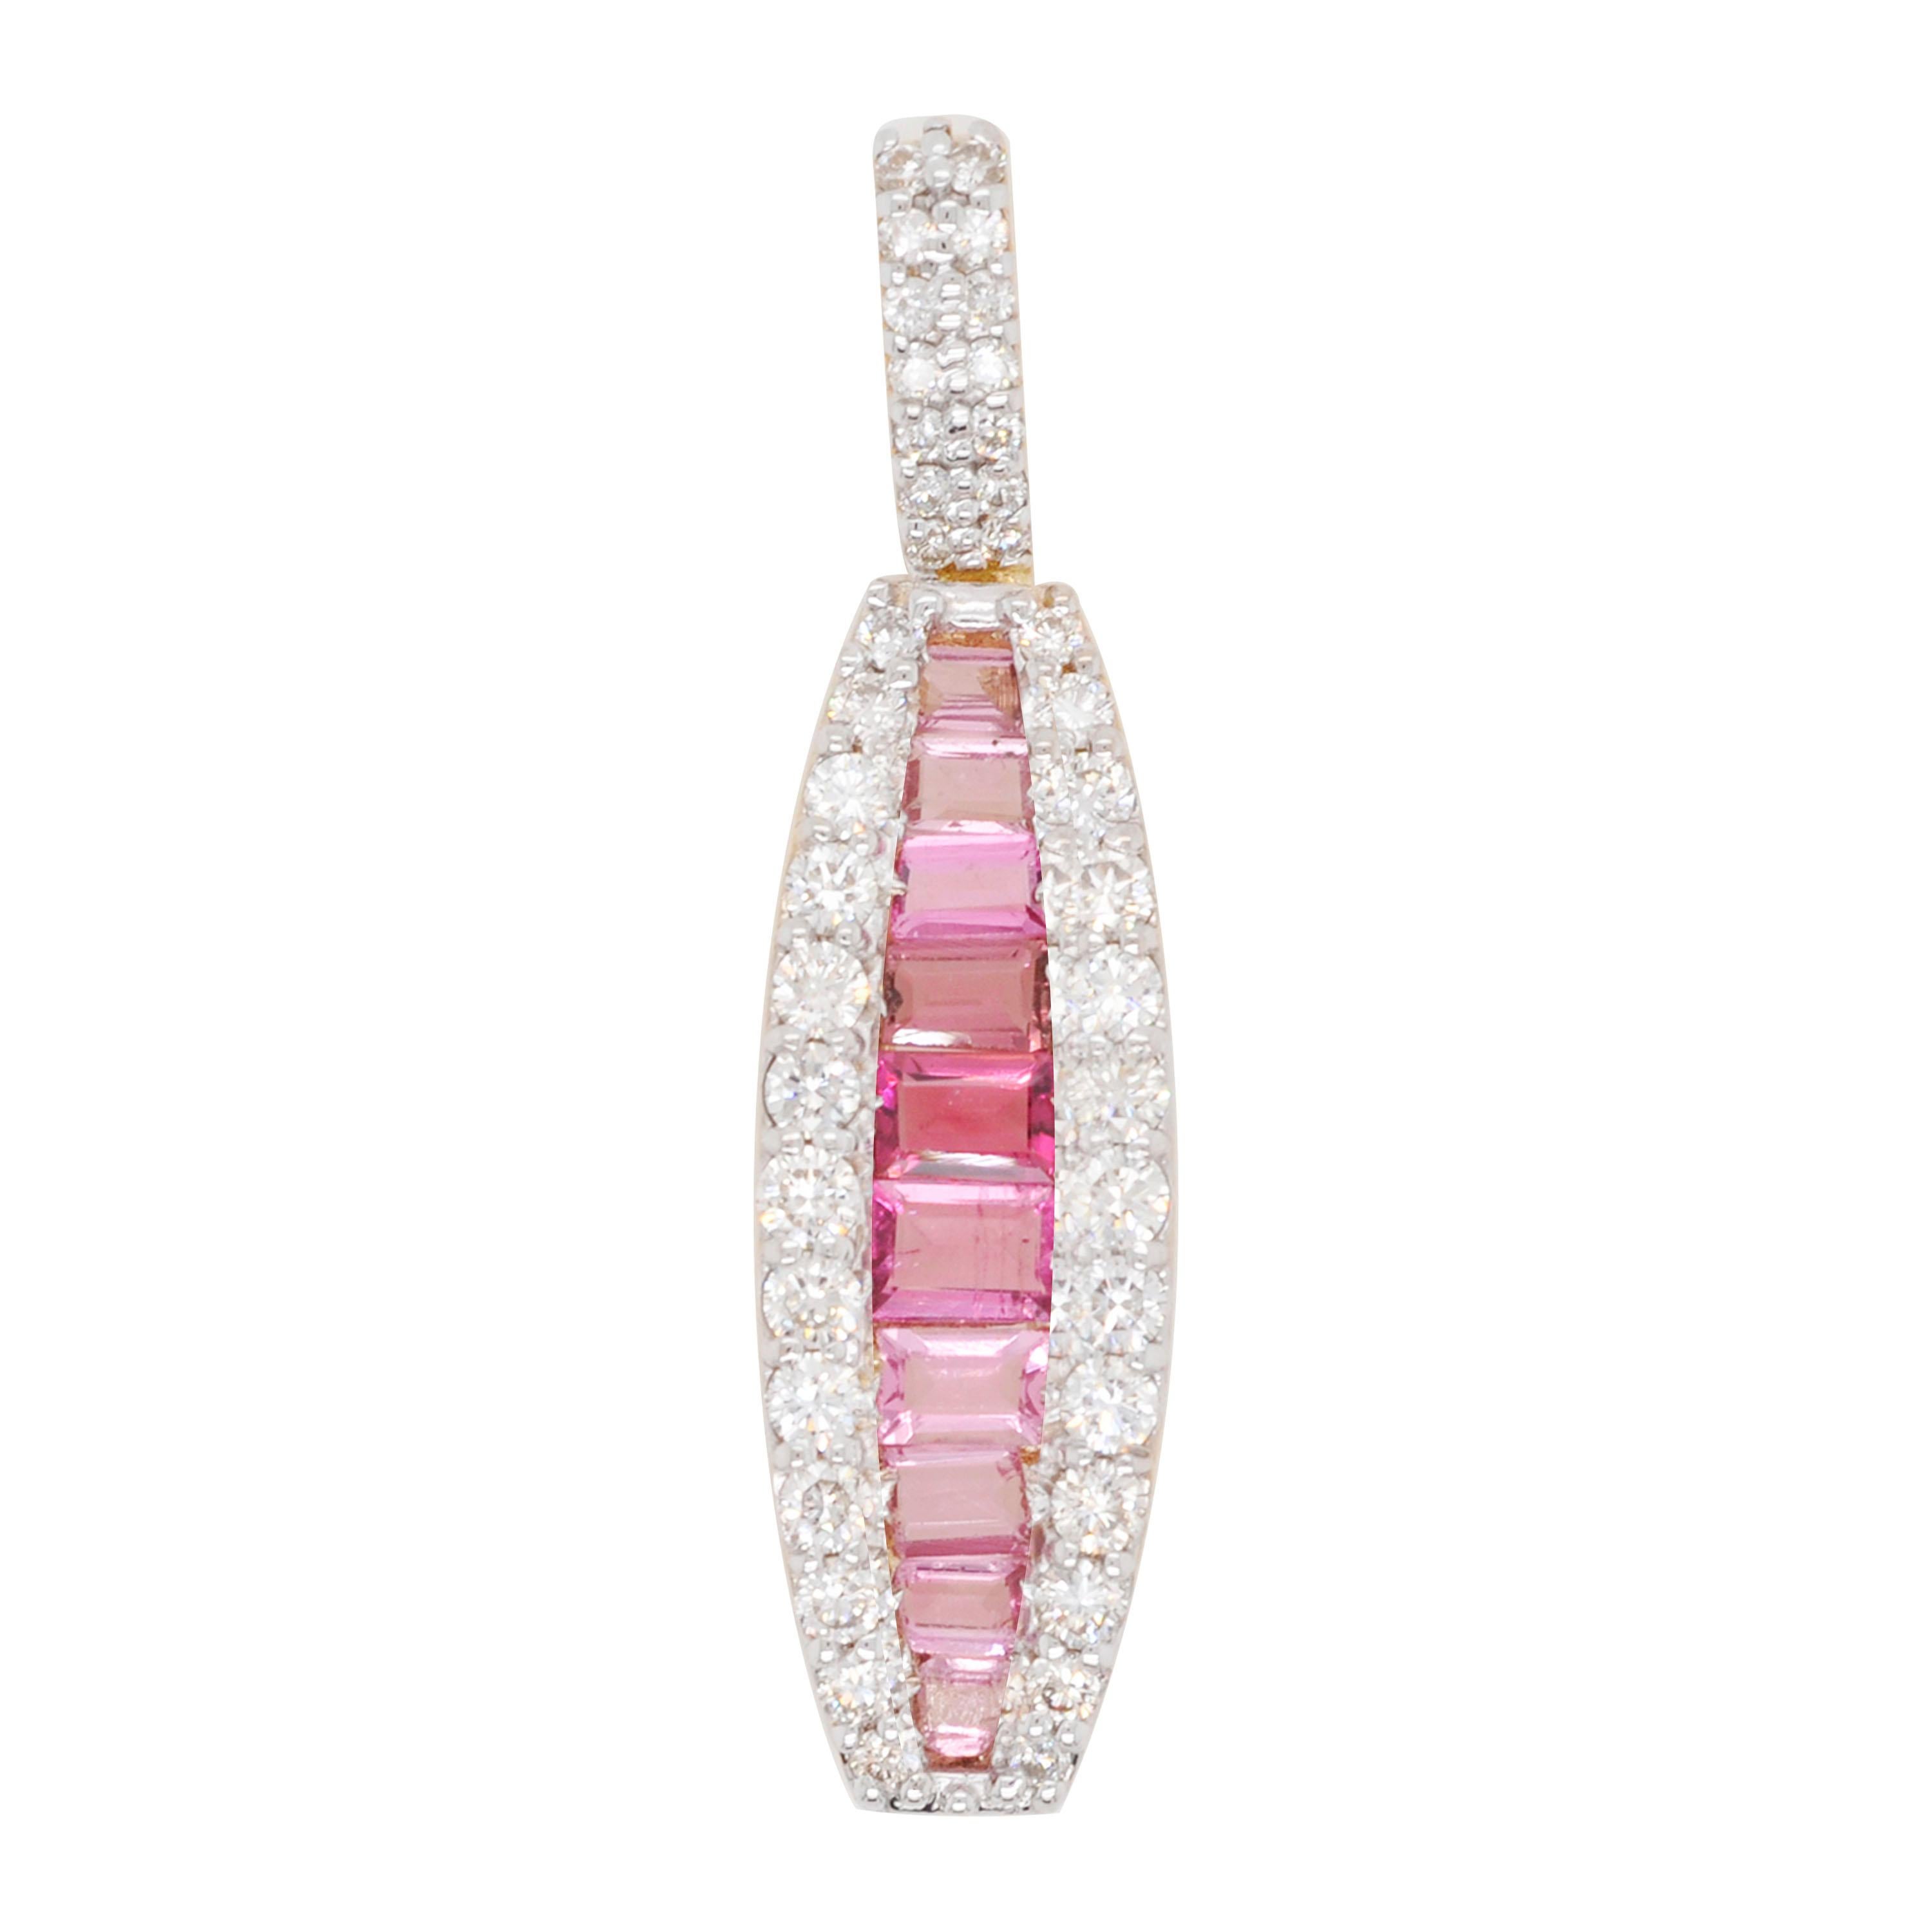 18 Karat Gold Channel Set Pink Tourmaline Baguette Diamond Pendant Necklace